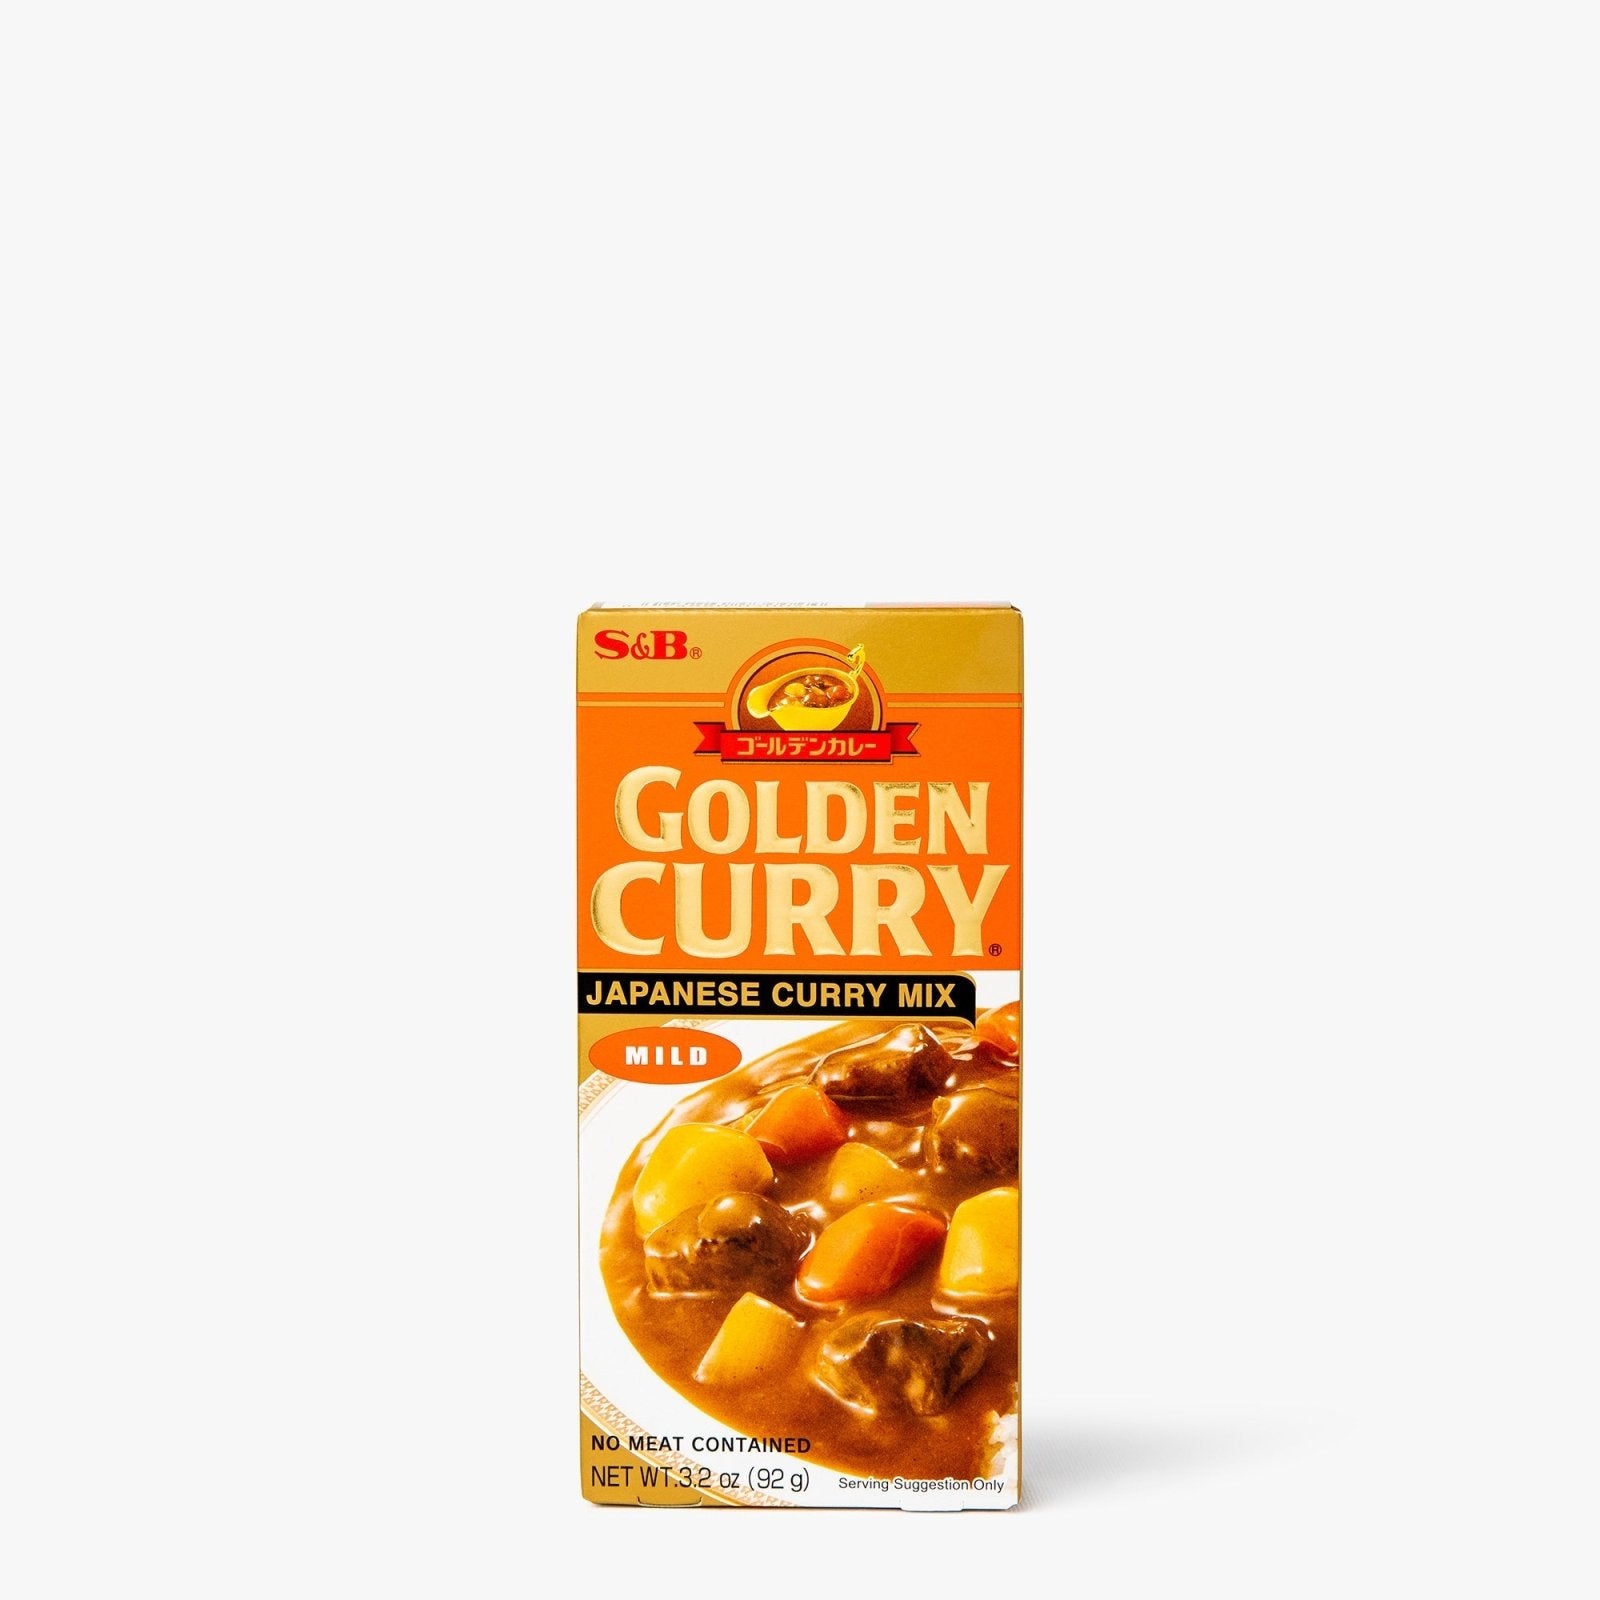 Sauce pour curry doux (mild) en tablette - 92g - S&B - iRASSHAi